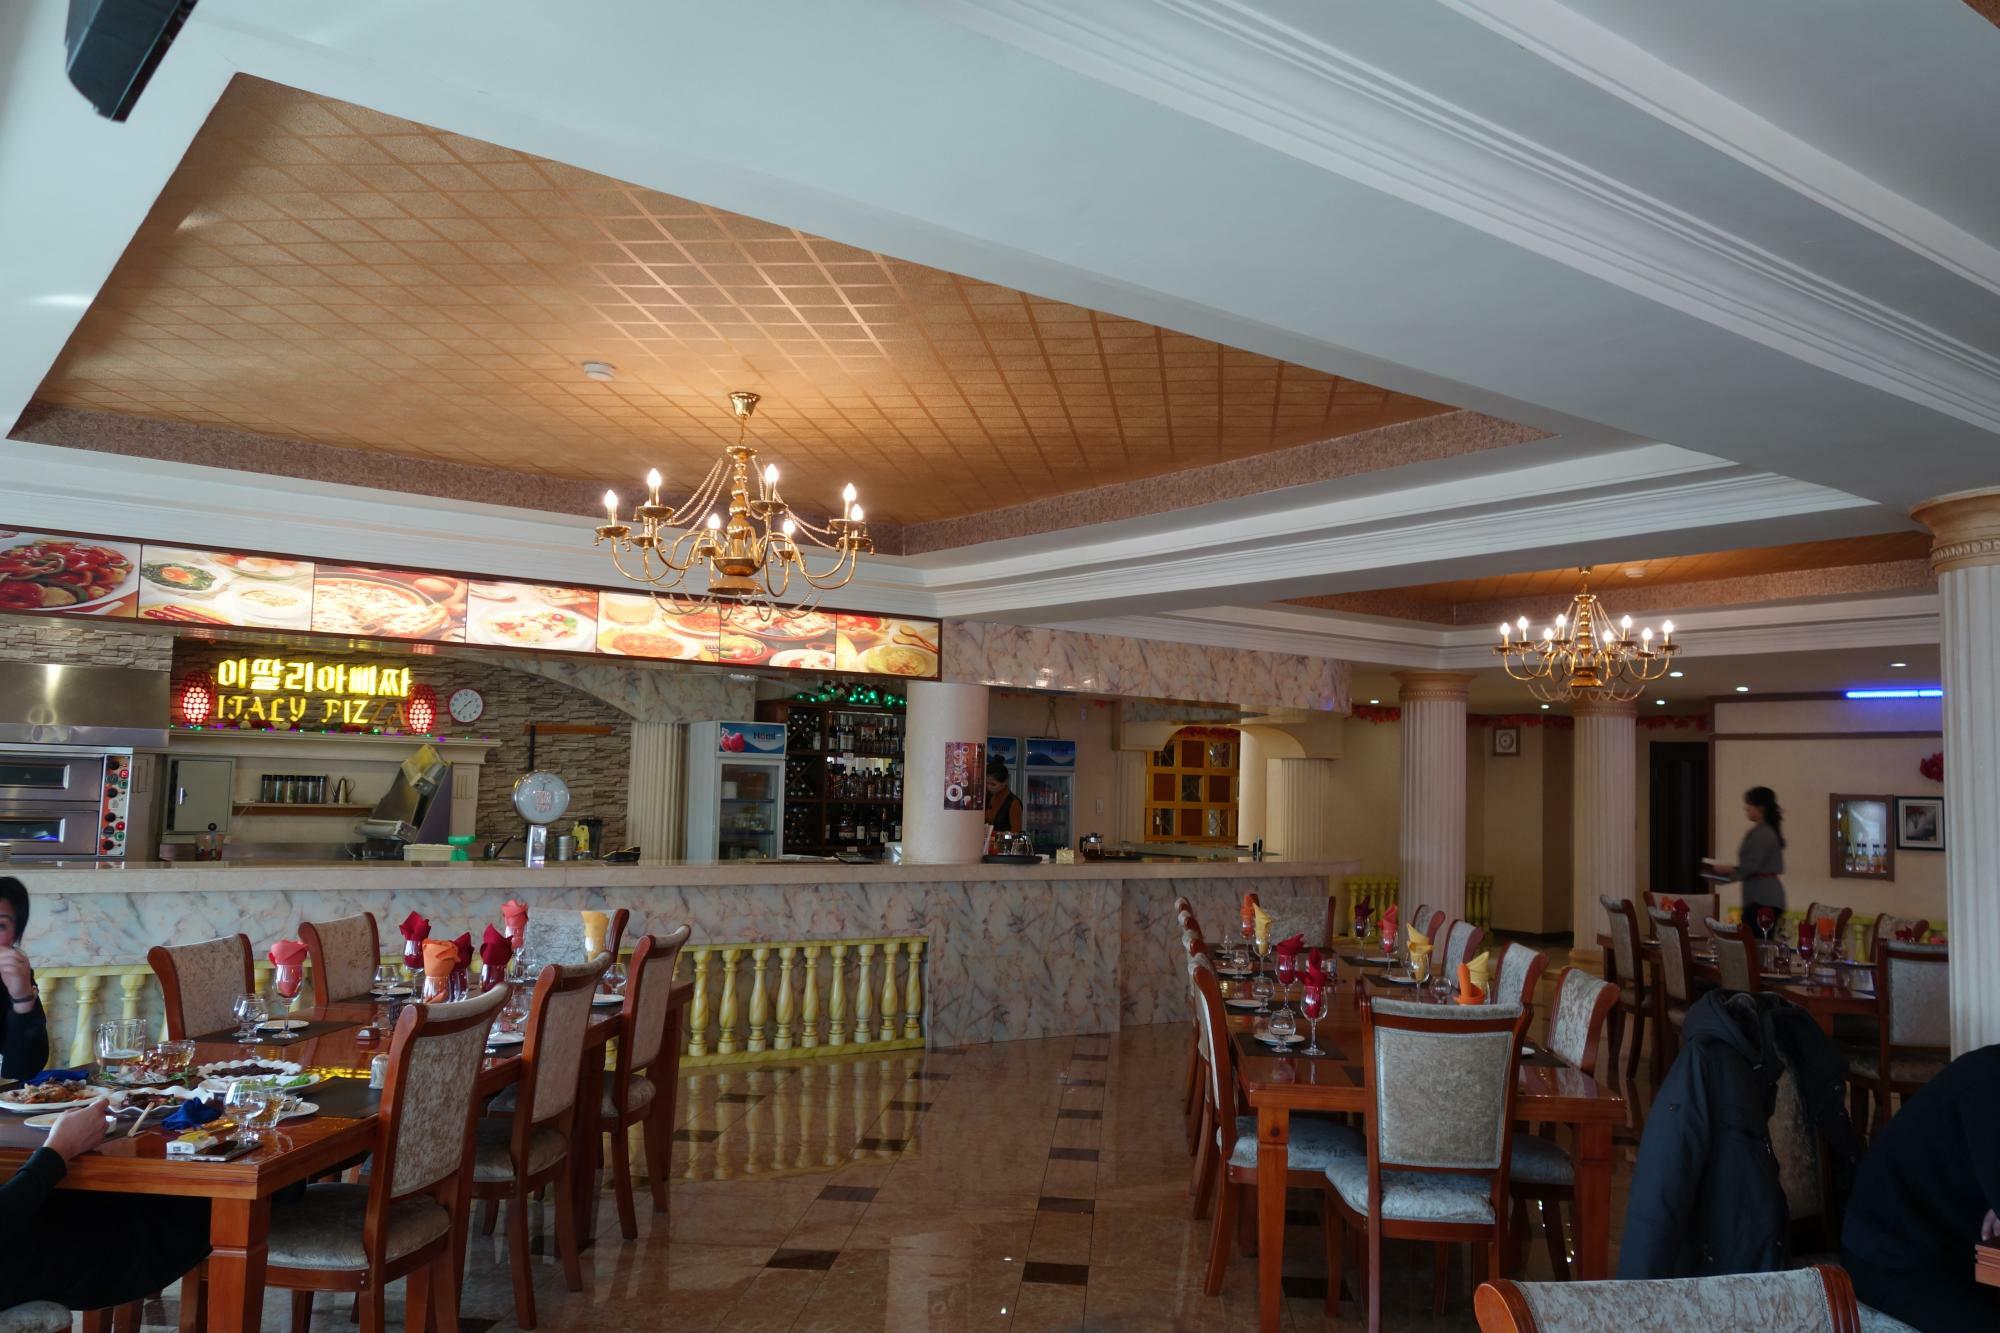 平壌市内にあるイタリアンレストランはかなりの広さだった